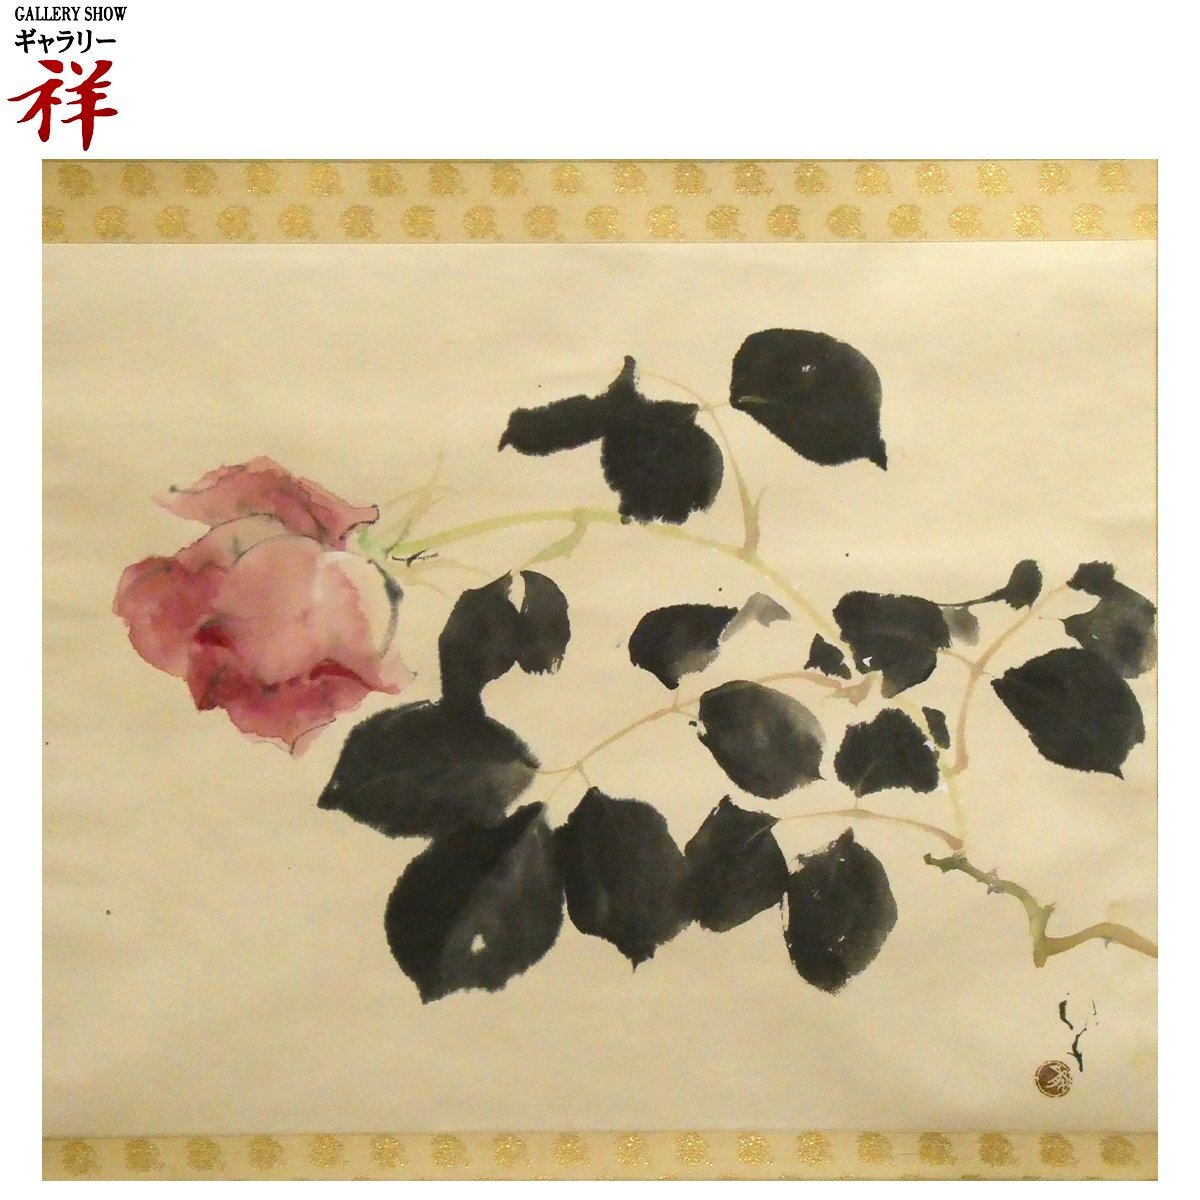 थानेदार [प्रामाणिक कार्य] रयुको कावाबाता लाल गुलाब जापानी पेंटिंग, 39 x 48.7 सेमी, वही बक्सा, वाकायामा में जन्मे, संस्कृति का क्रम, हस्तलिखित, अपनी तरह का अनोखा [गैलरी थानेदार], चित्रकारी, जापानी पेंटिंग, फूल और पक्षी, पक्षी और जानवर